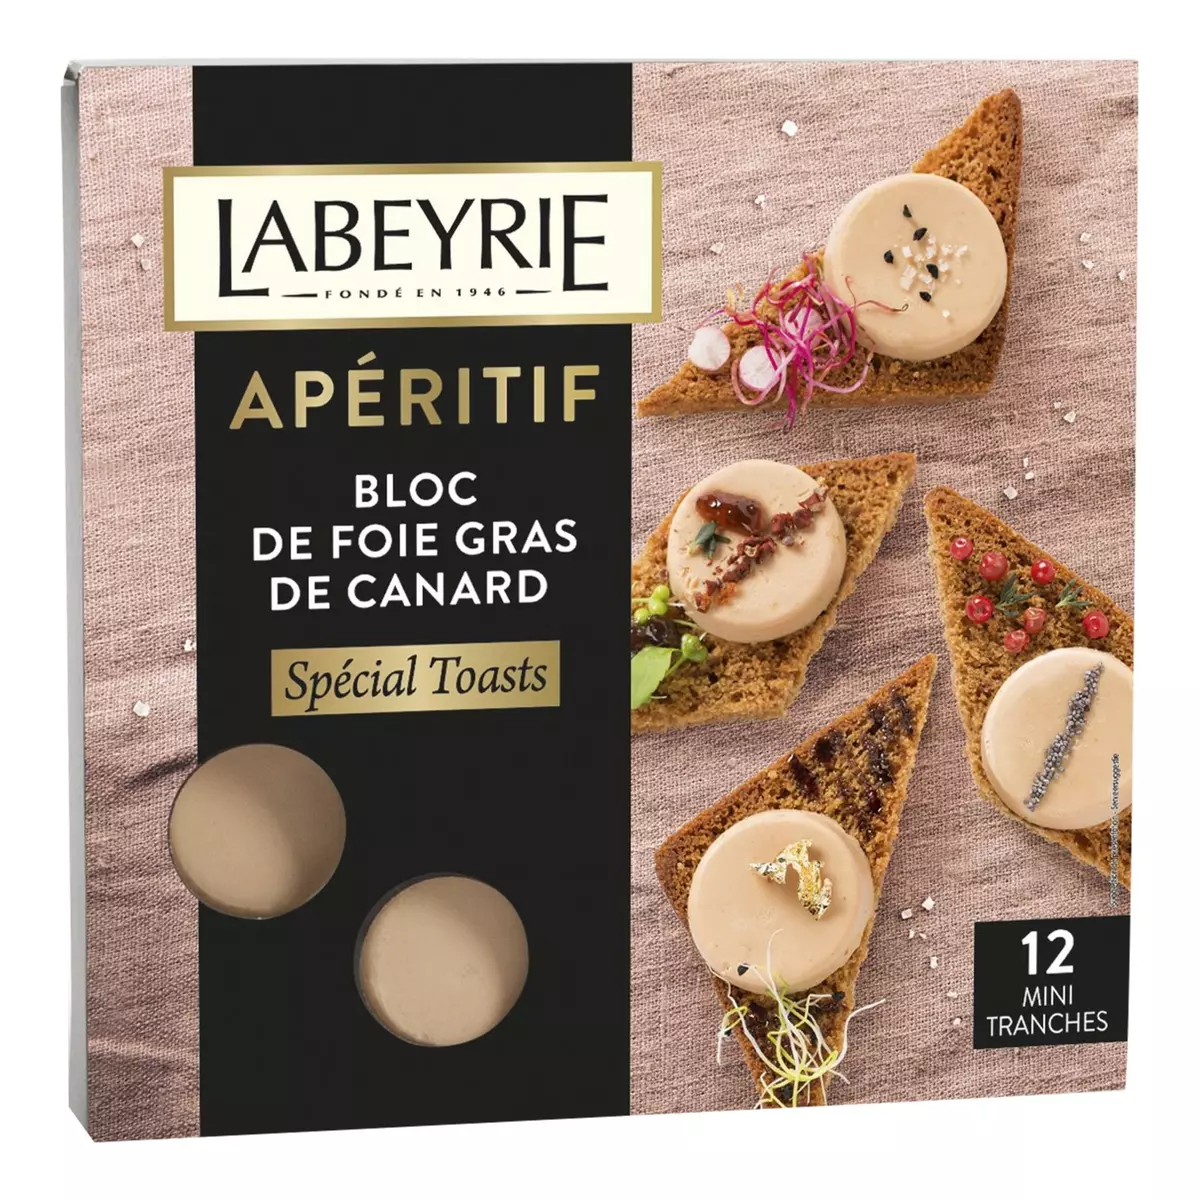 LABEYRIE Bloc de foie gras de canard spécial toasts apéritif 12 mini tranches 90g